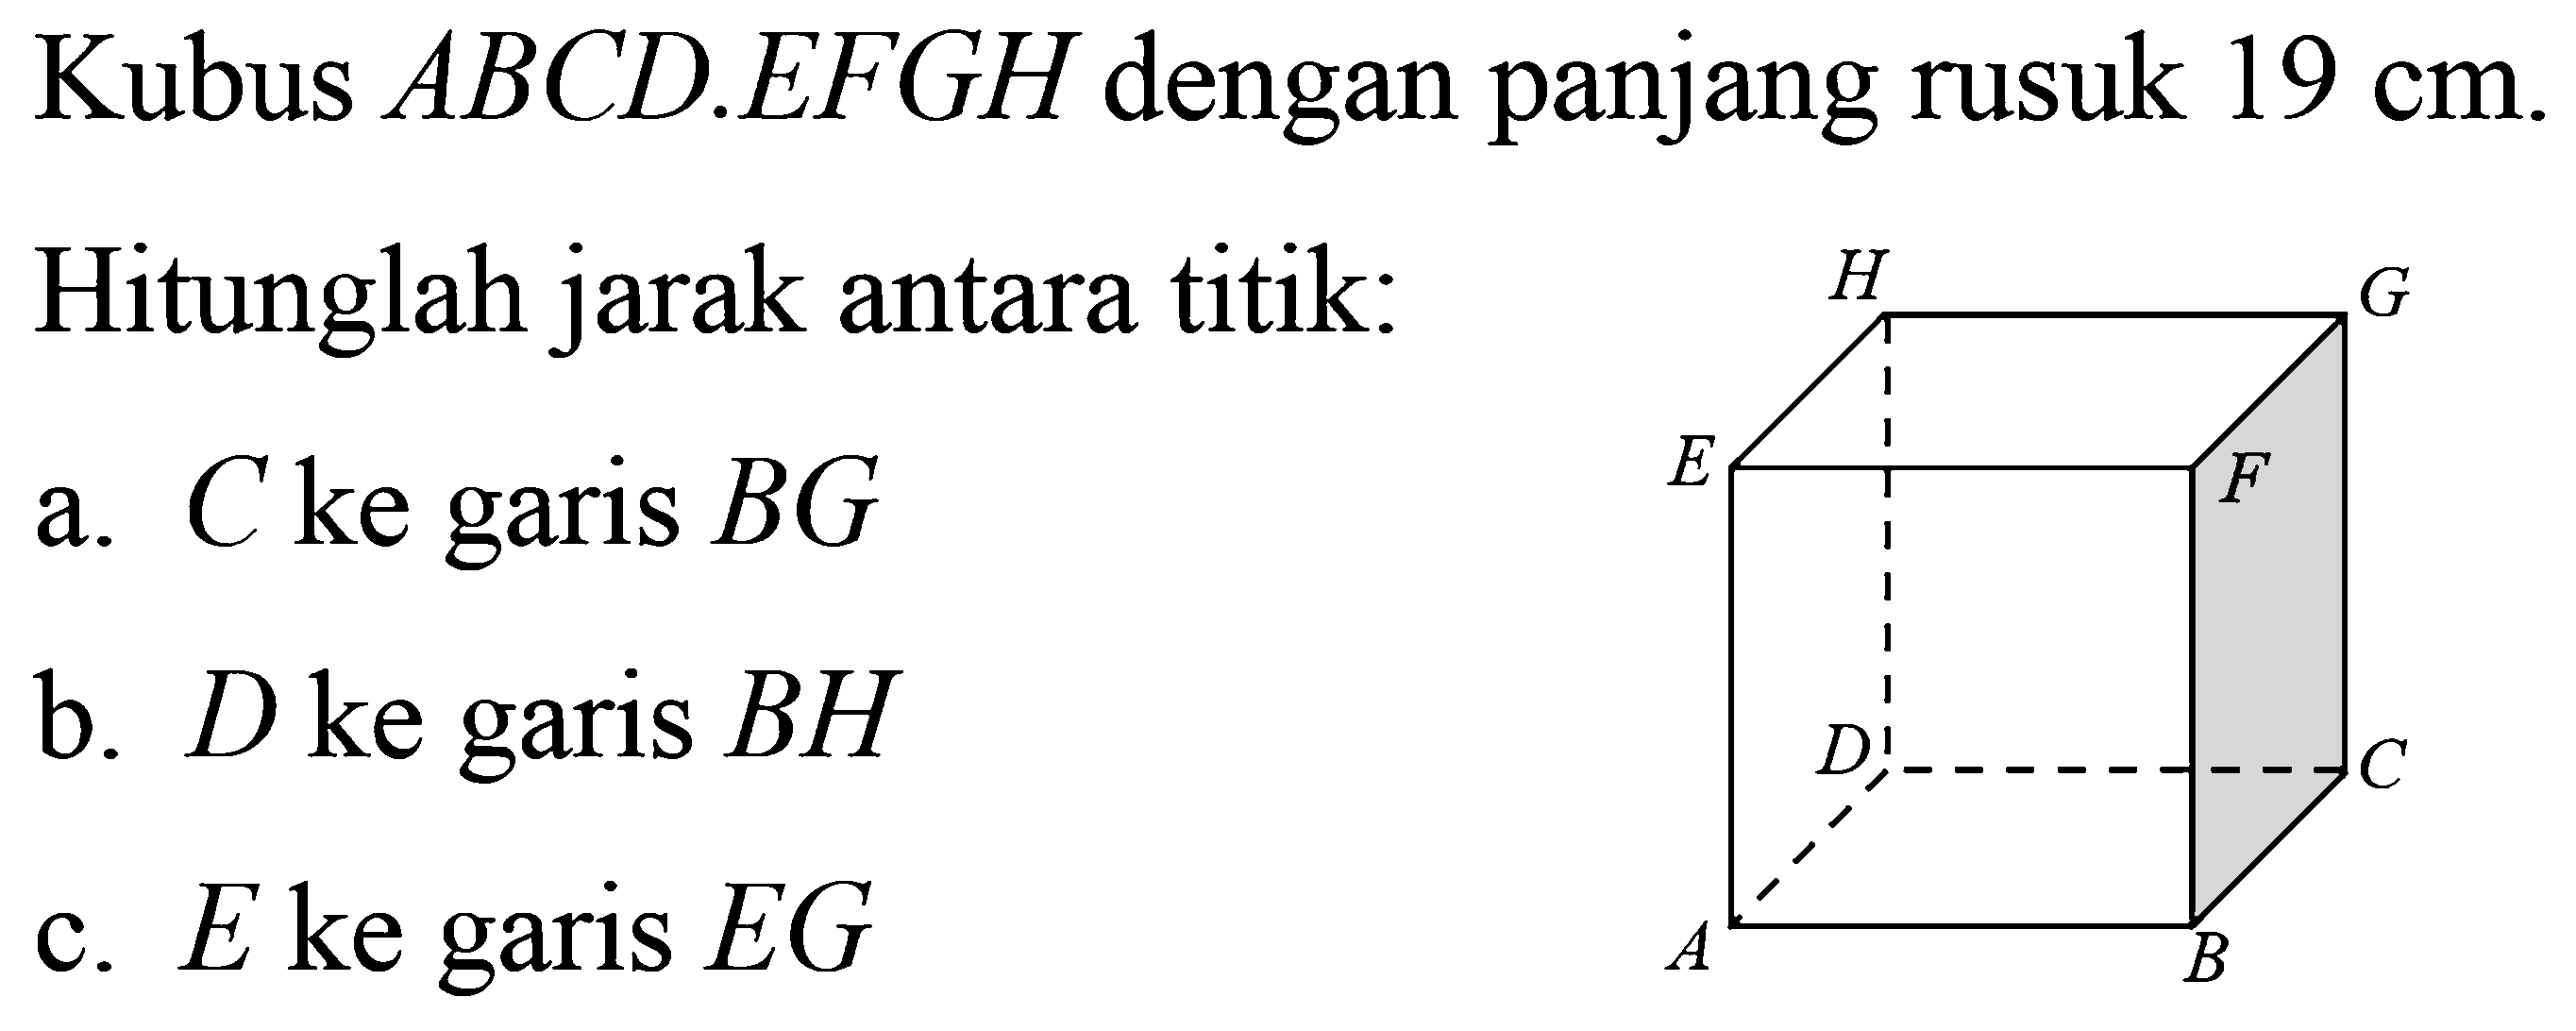 Kubus ABCD.EFGH dengan panjang rusuk 19 cm. Hitunglah jarak antara titik: a. C ke garis BG b. D ke garis BH c. E ke garis EG ABCDEFGH